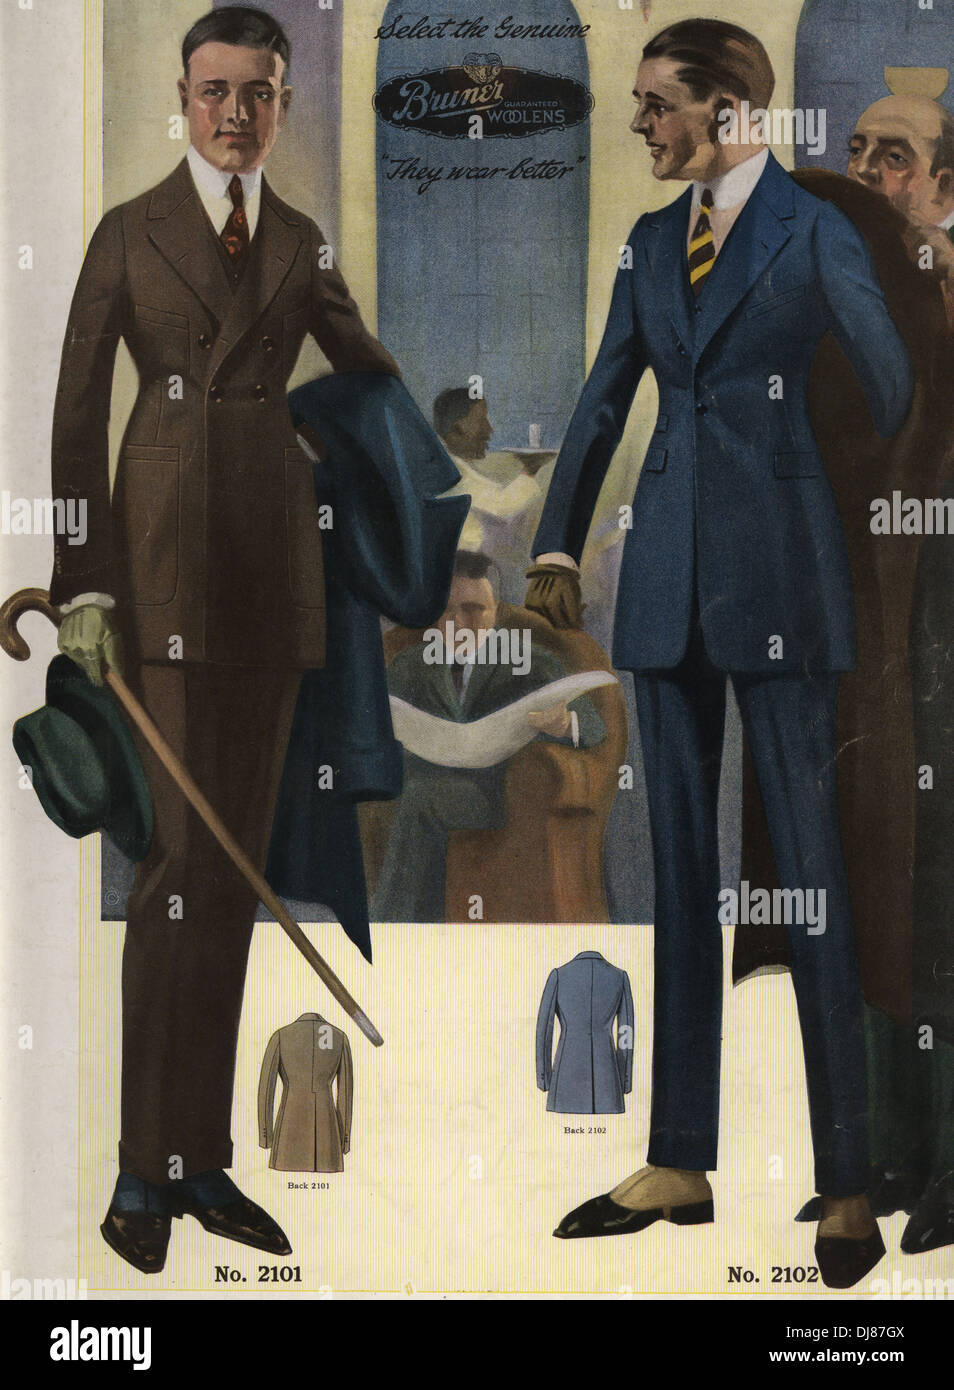 Zwei-Knopf-Einreiher Herrenanzug in Sack, mit Hotel-Lobby-Szene im Hintergrund. Stockfoto